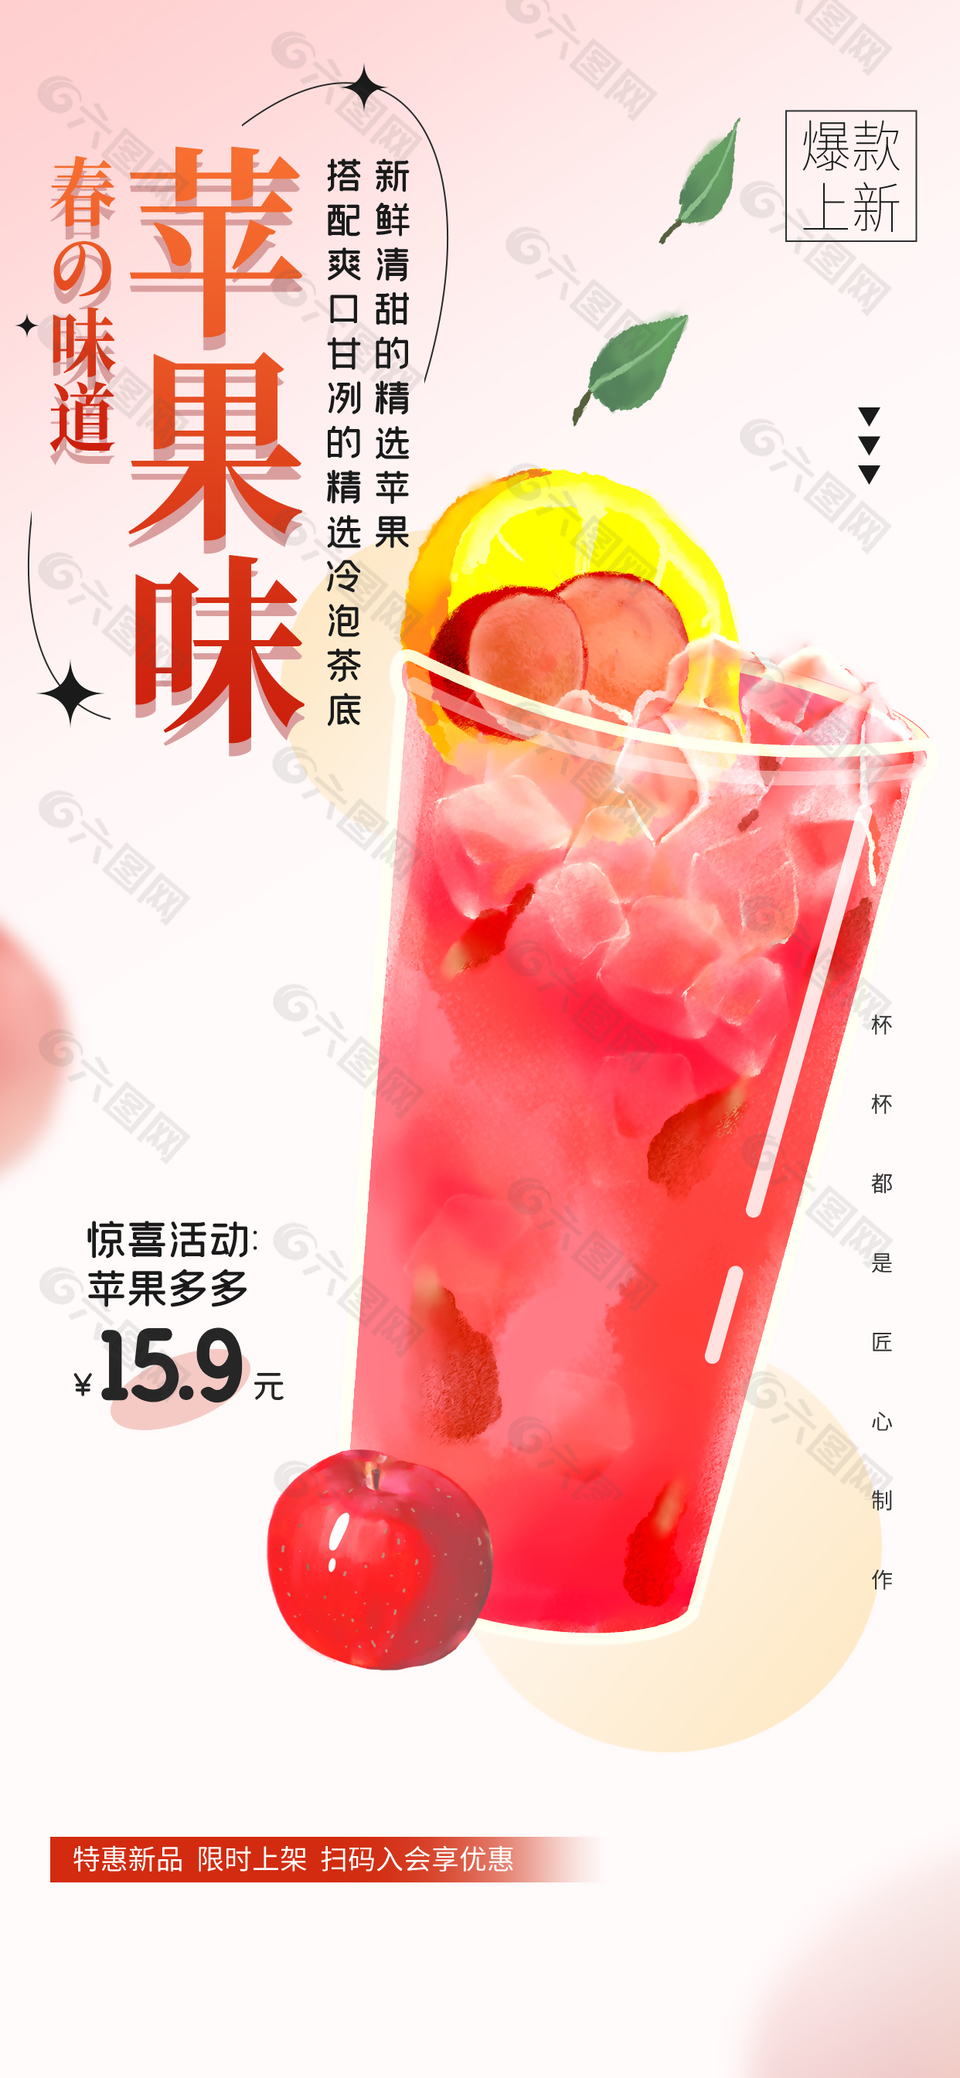 春季新品苹果味奶茶海报宣传素材